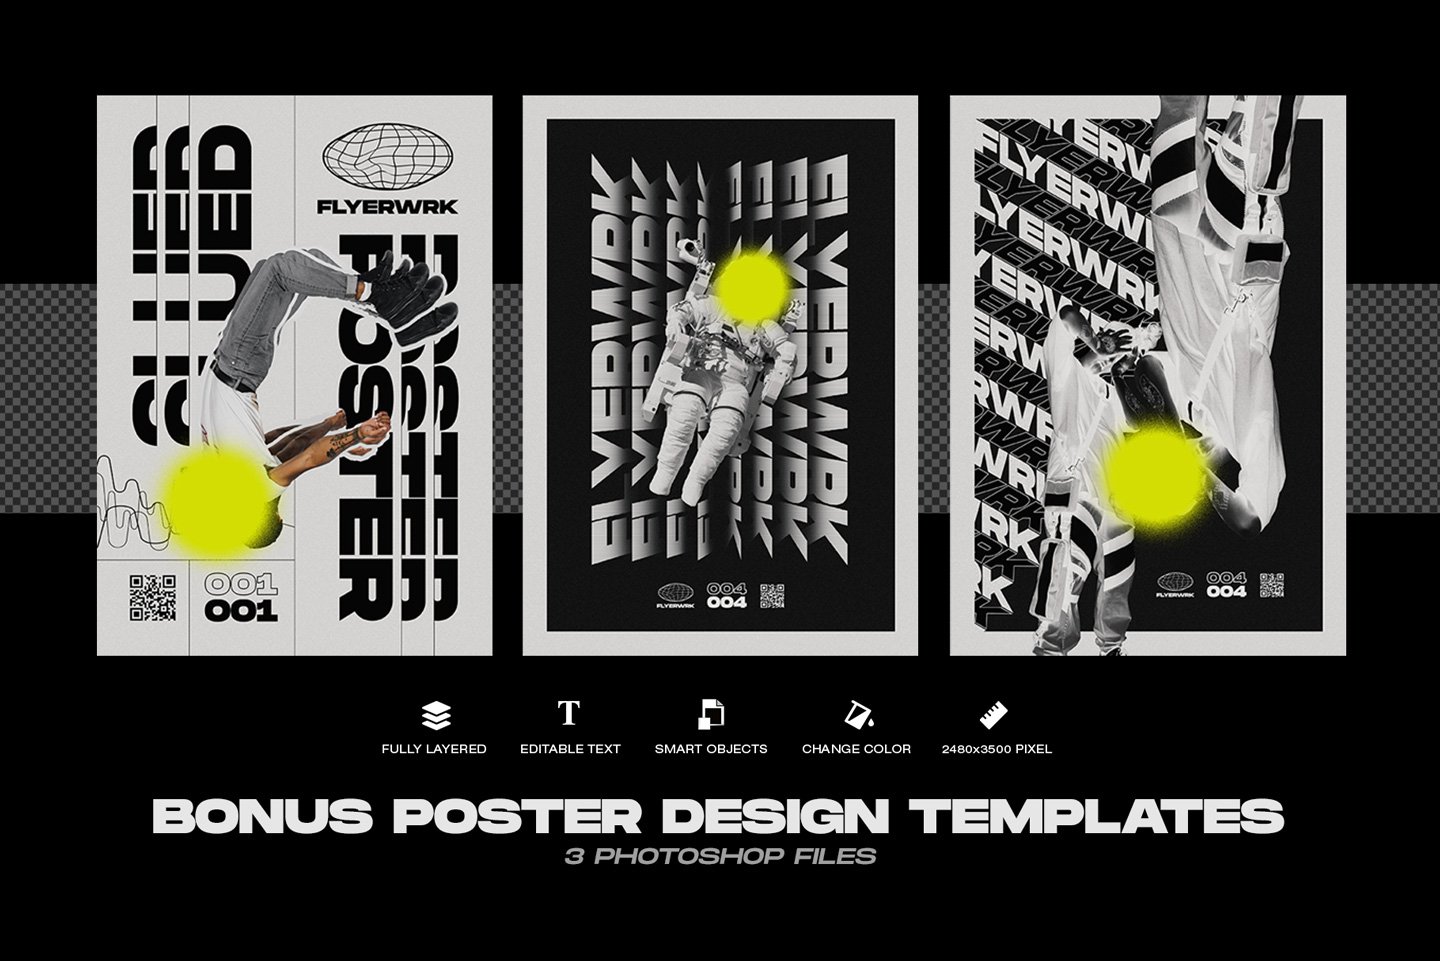 544 潮流街头胶合褶皱做旧海报设计贴图展示样机模板PS素材 Flyerwrk – Glued Poster Textures